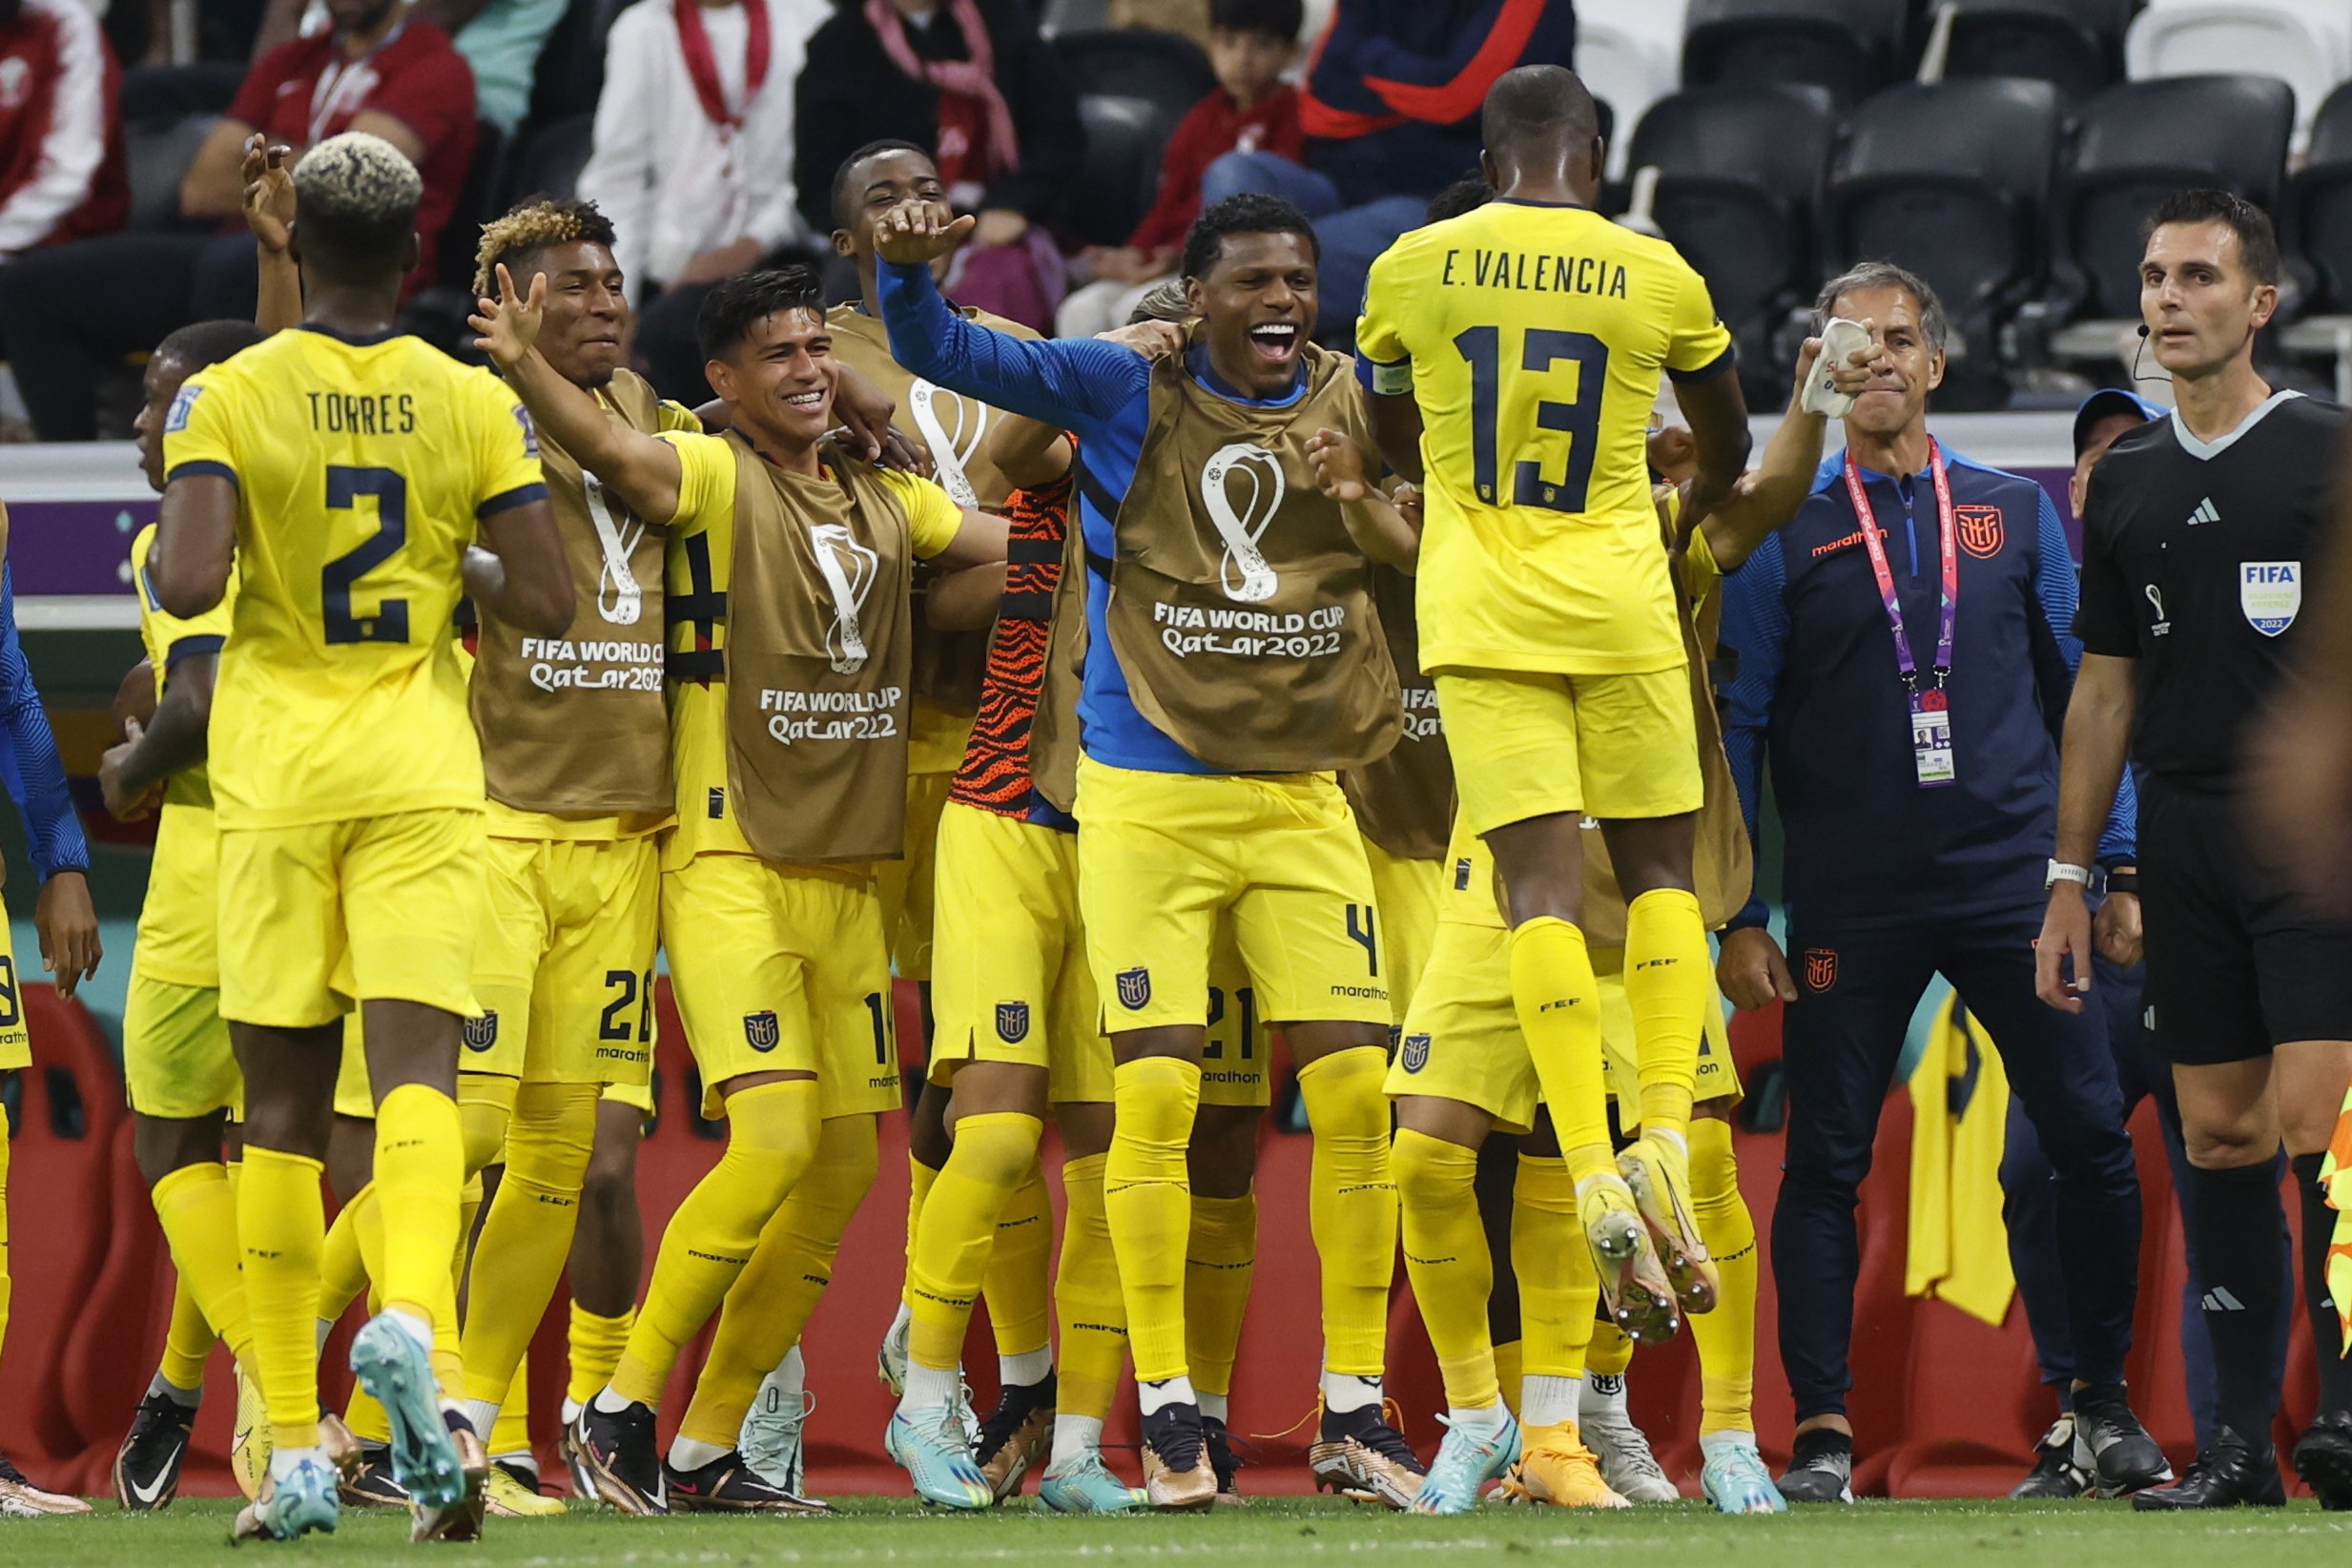 L'Equador reprimeix l'eufòria de Qatar en l'estrena del Mundial (0-2)